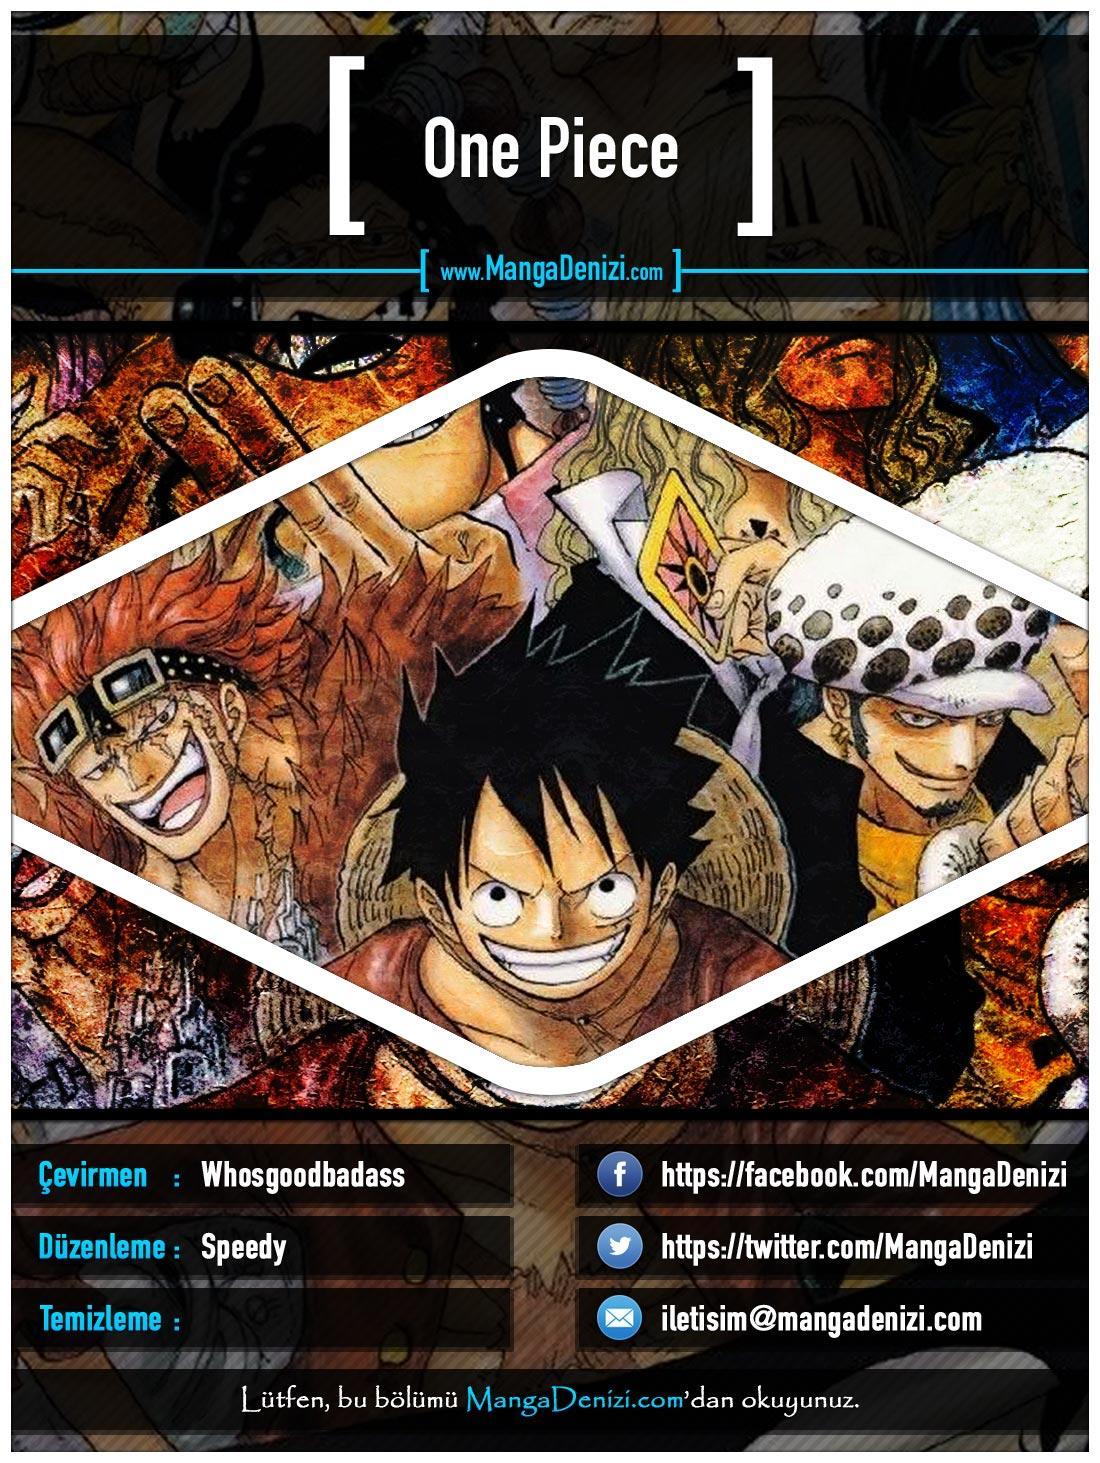 One Piece [Renkli] mangasının 0520 bölümünün 1. sayfasını okuyorsunuz.